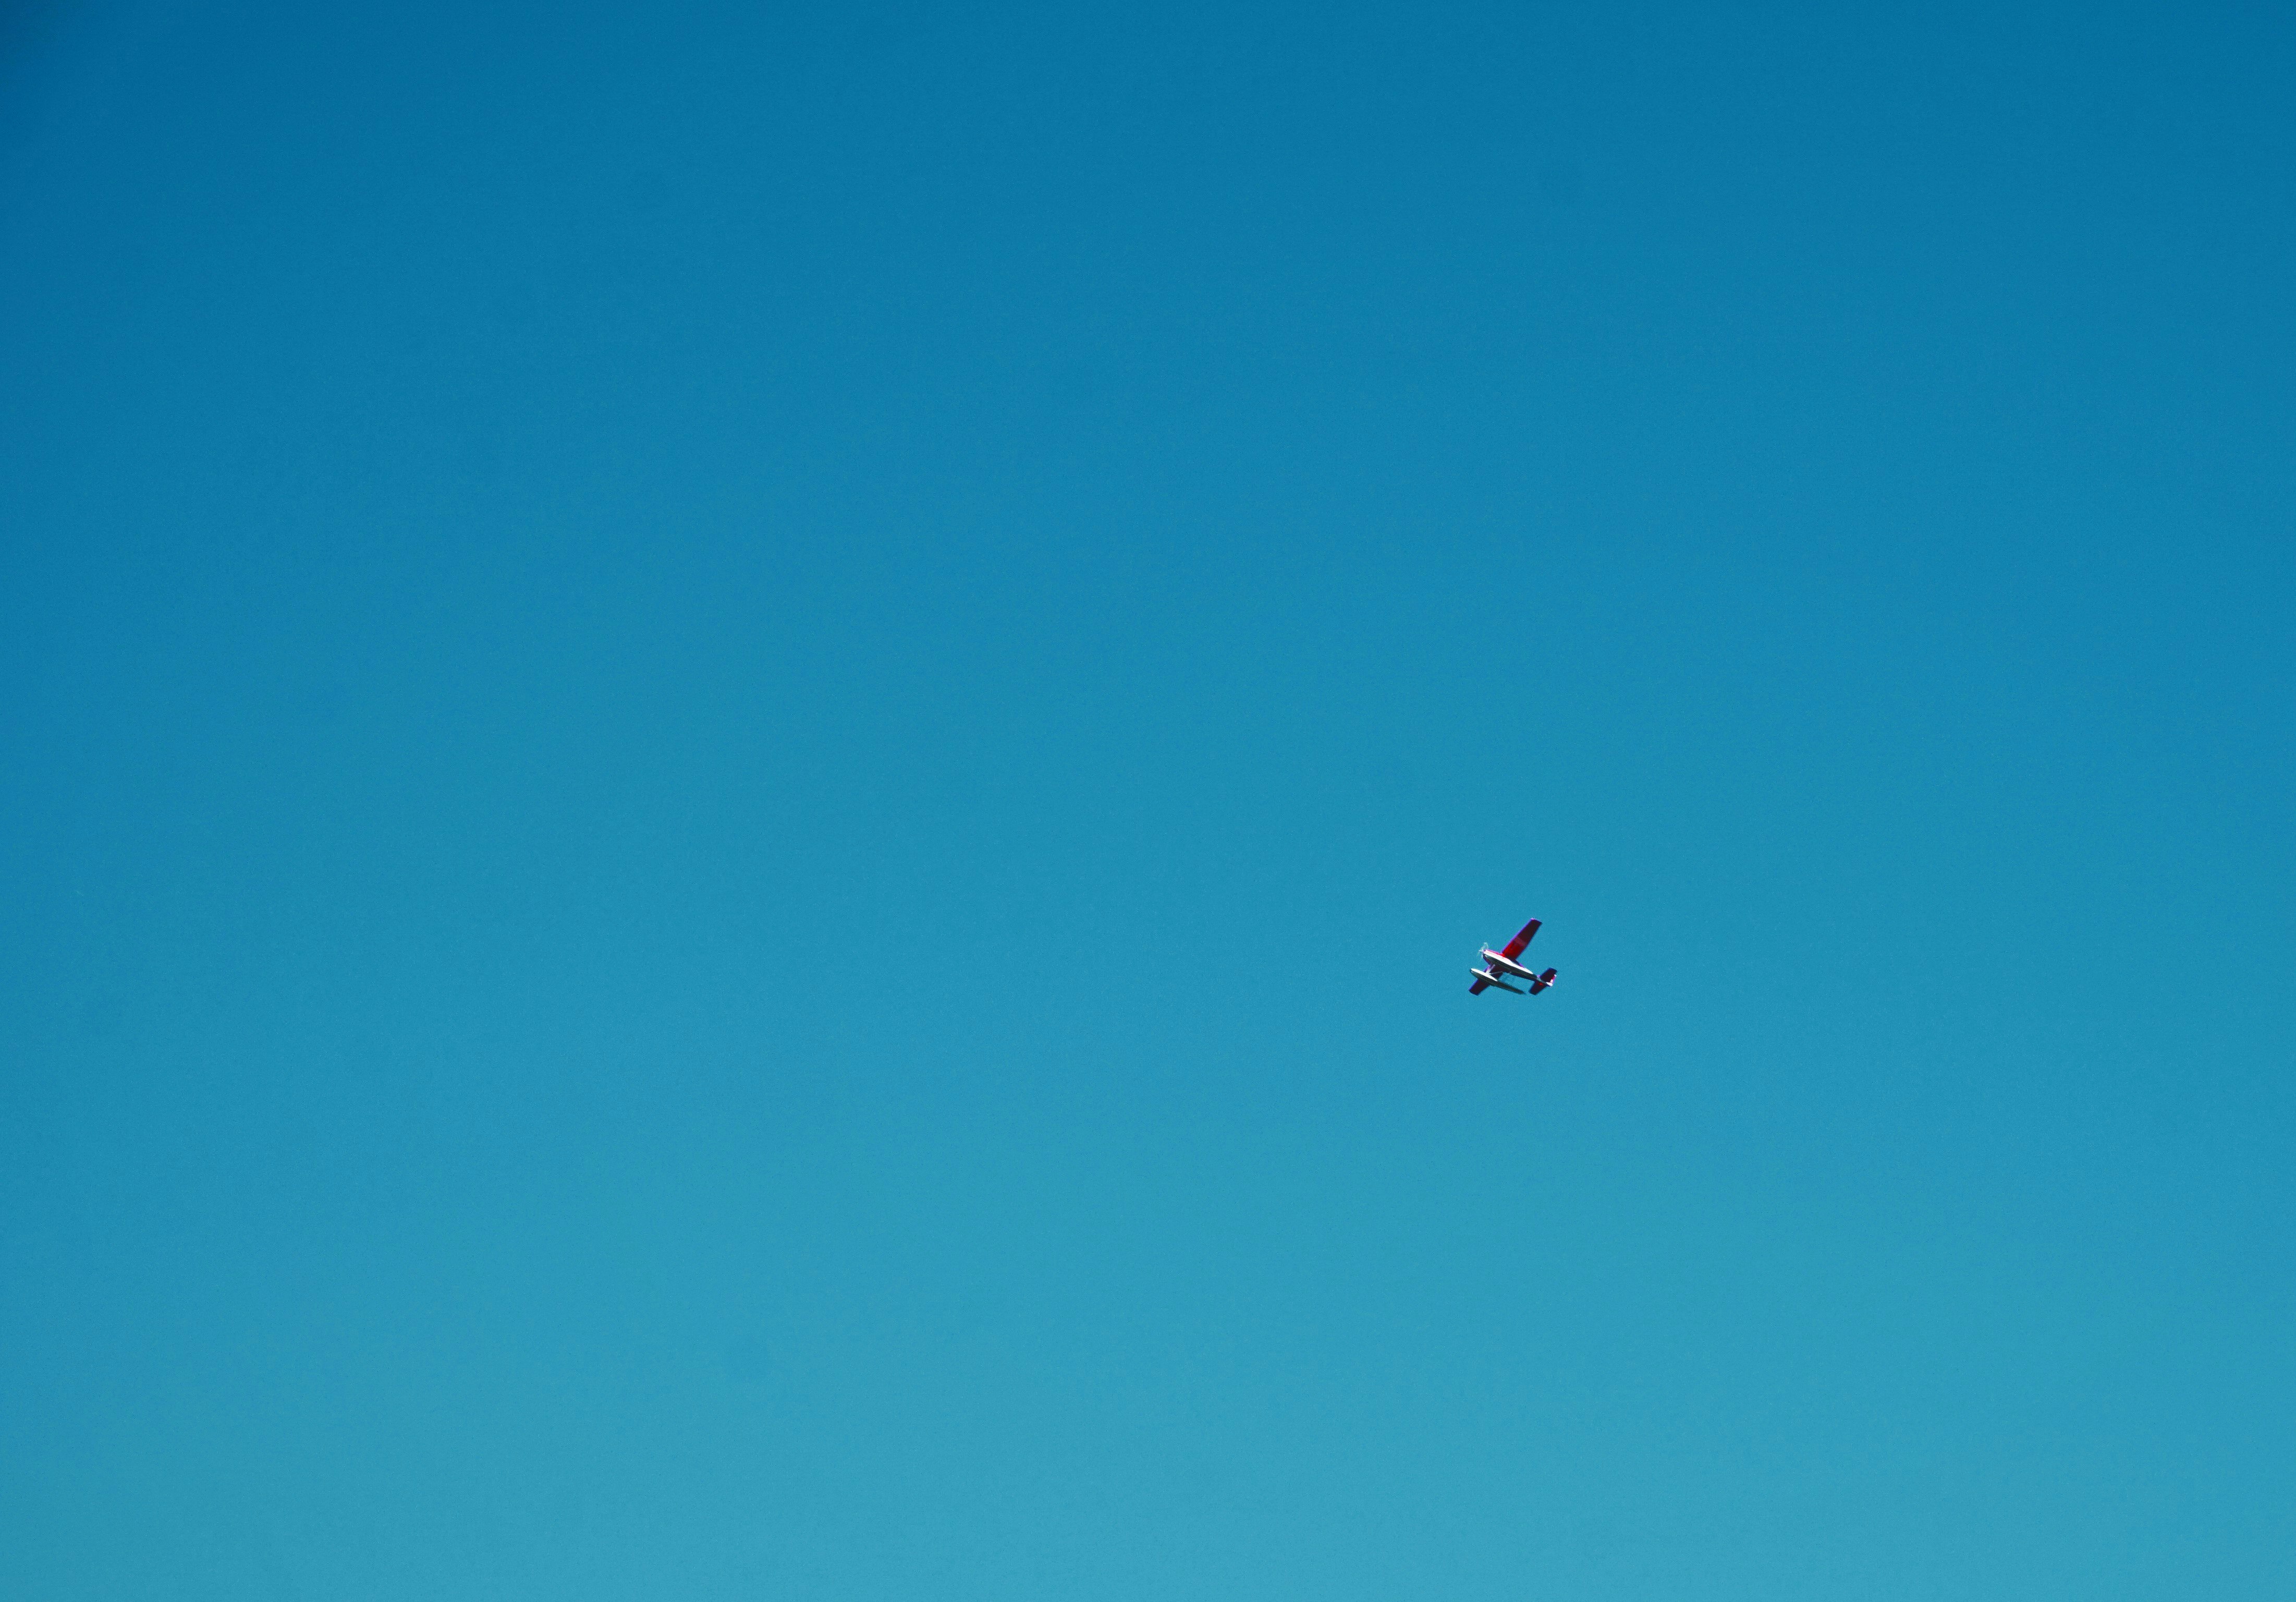 white plane under blue sky during daytime